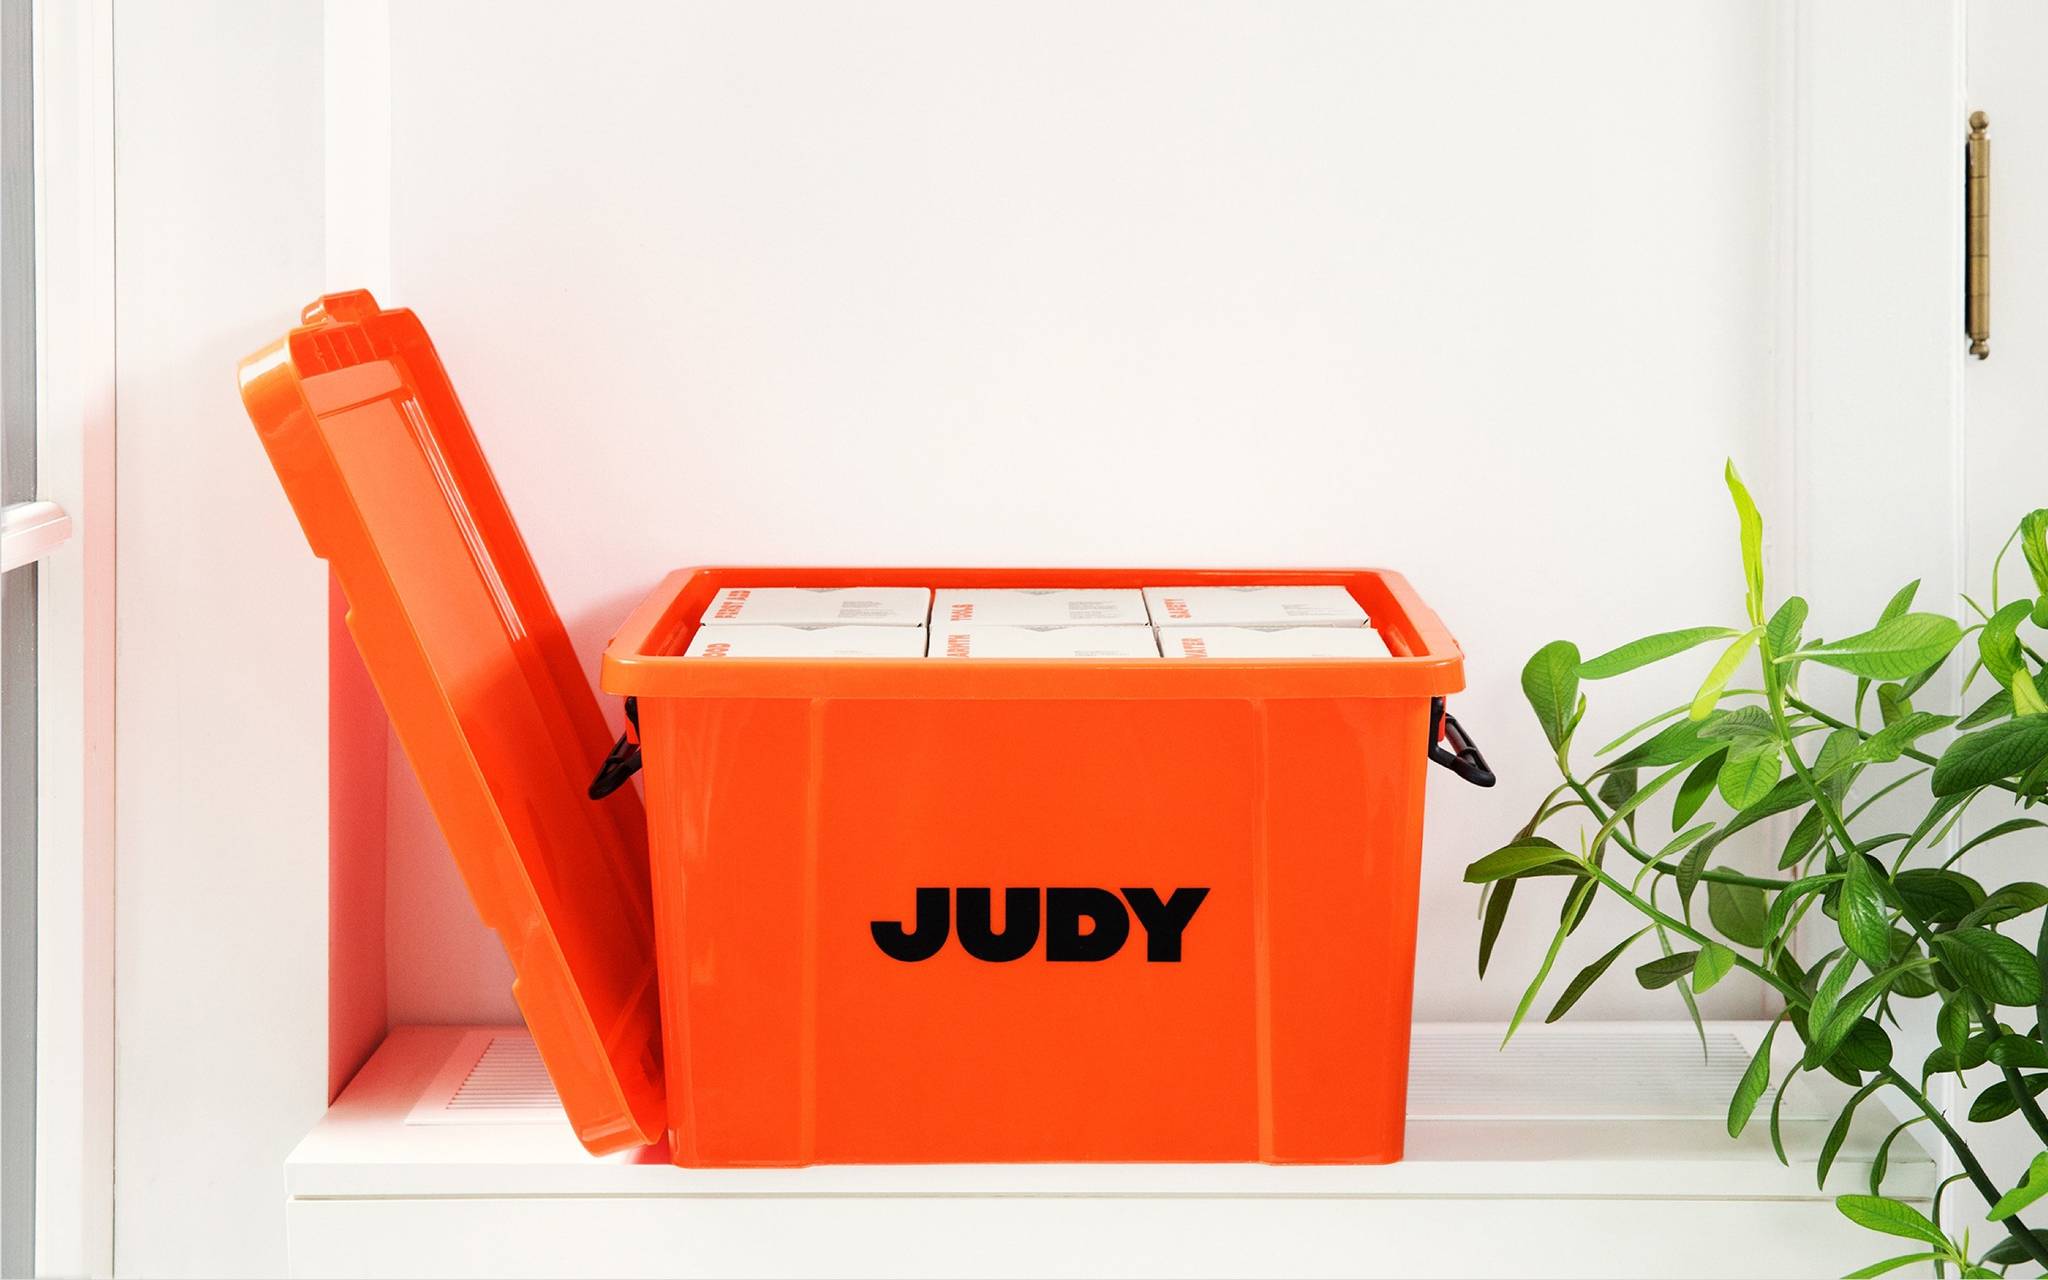 Judy: prepper packs for modern Americans